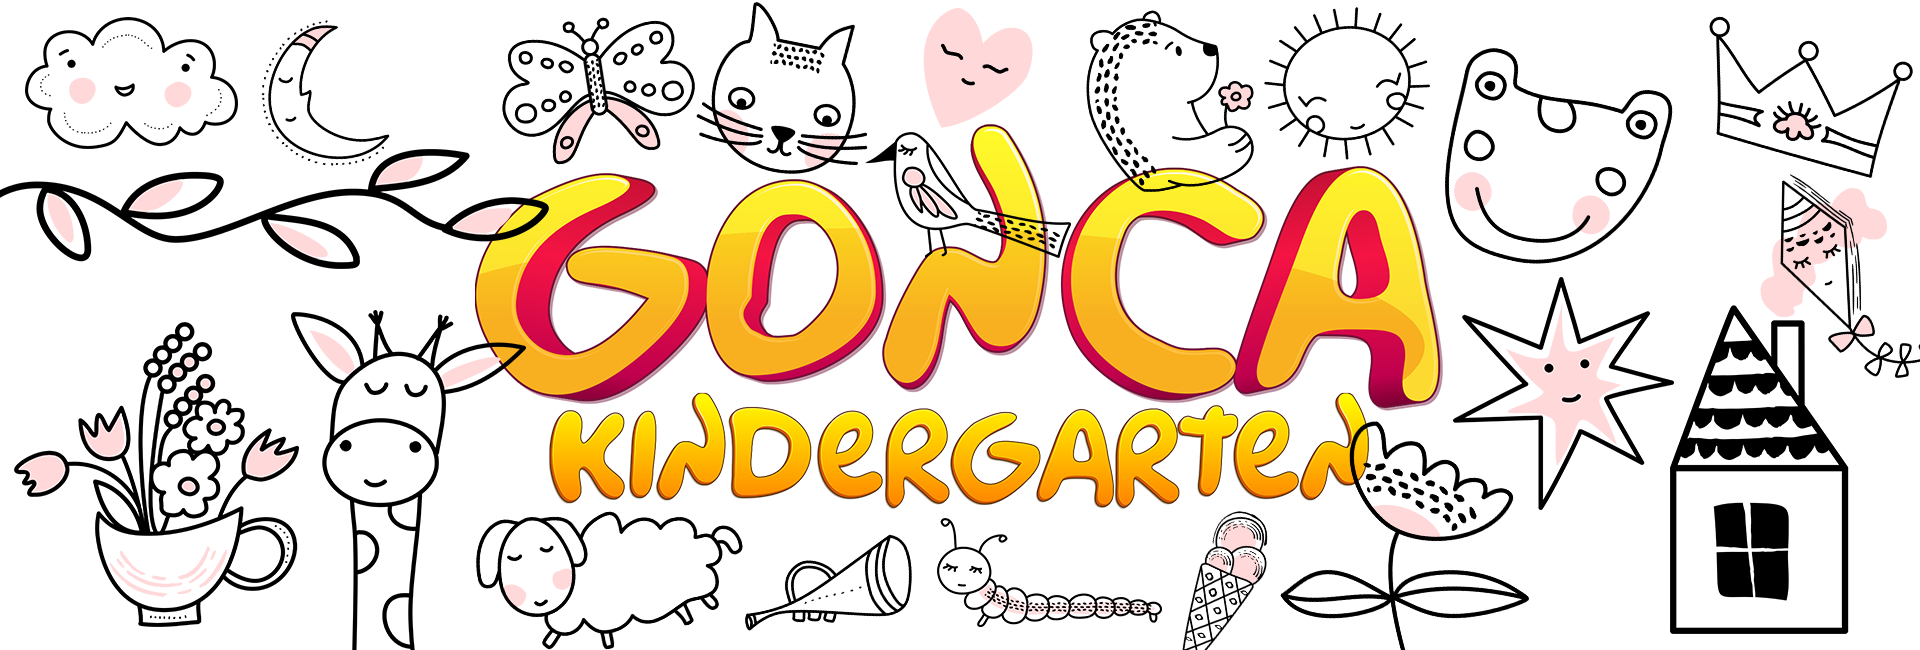 Gonca Kindergarten